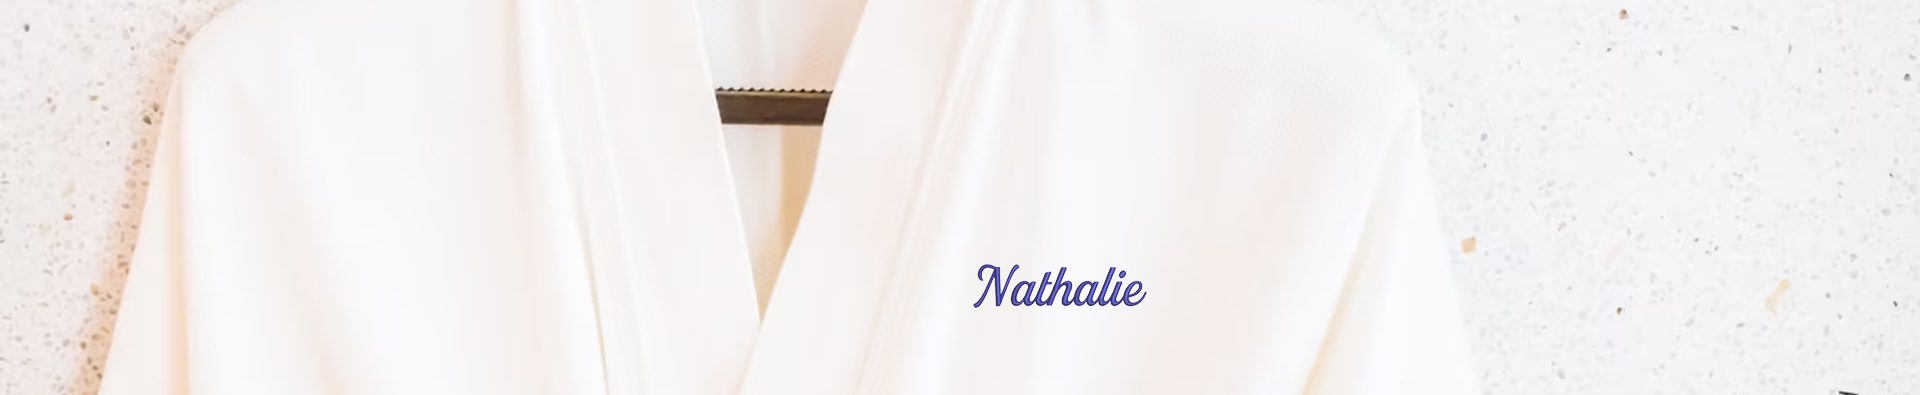 Badjas met naam "Nathalie"